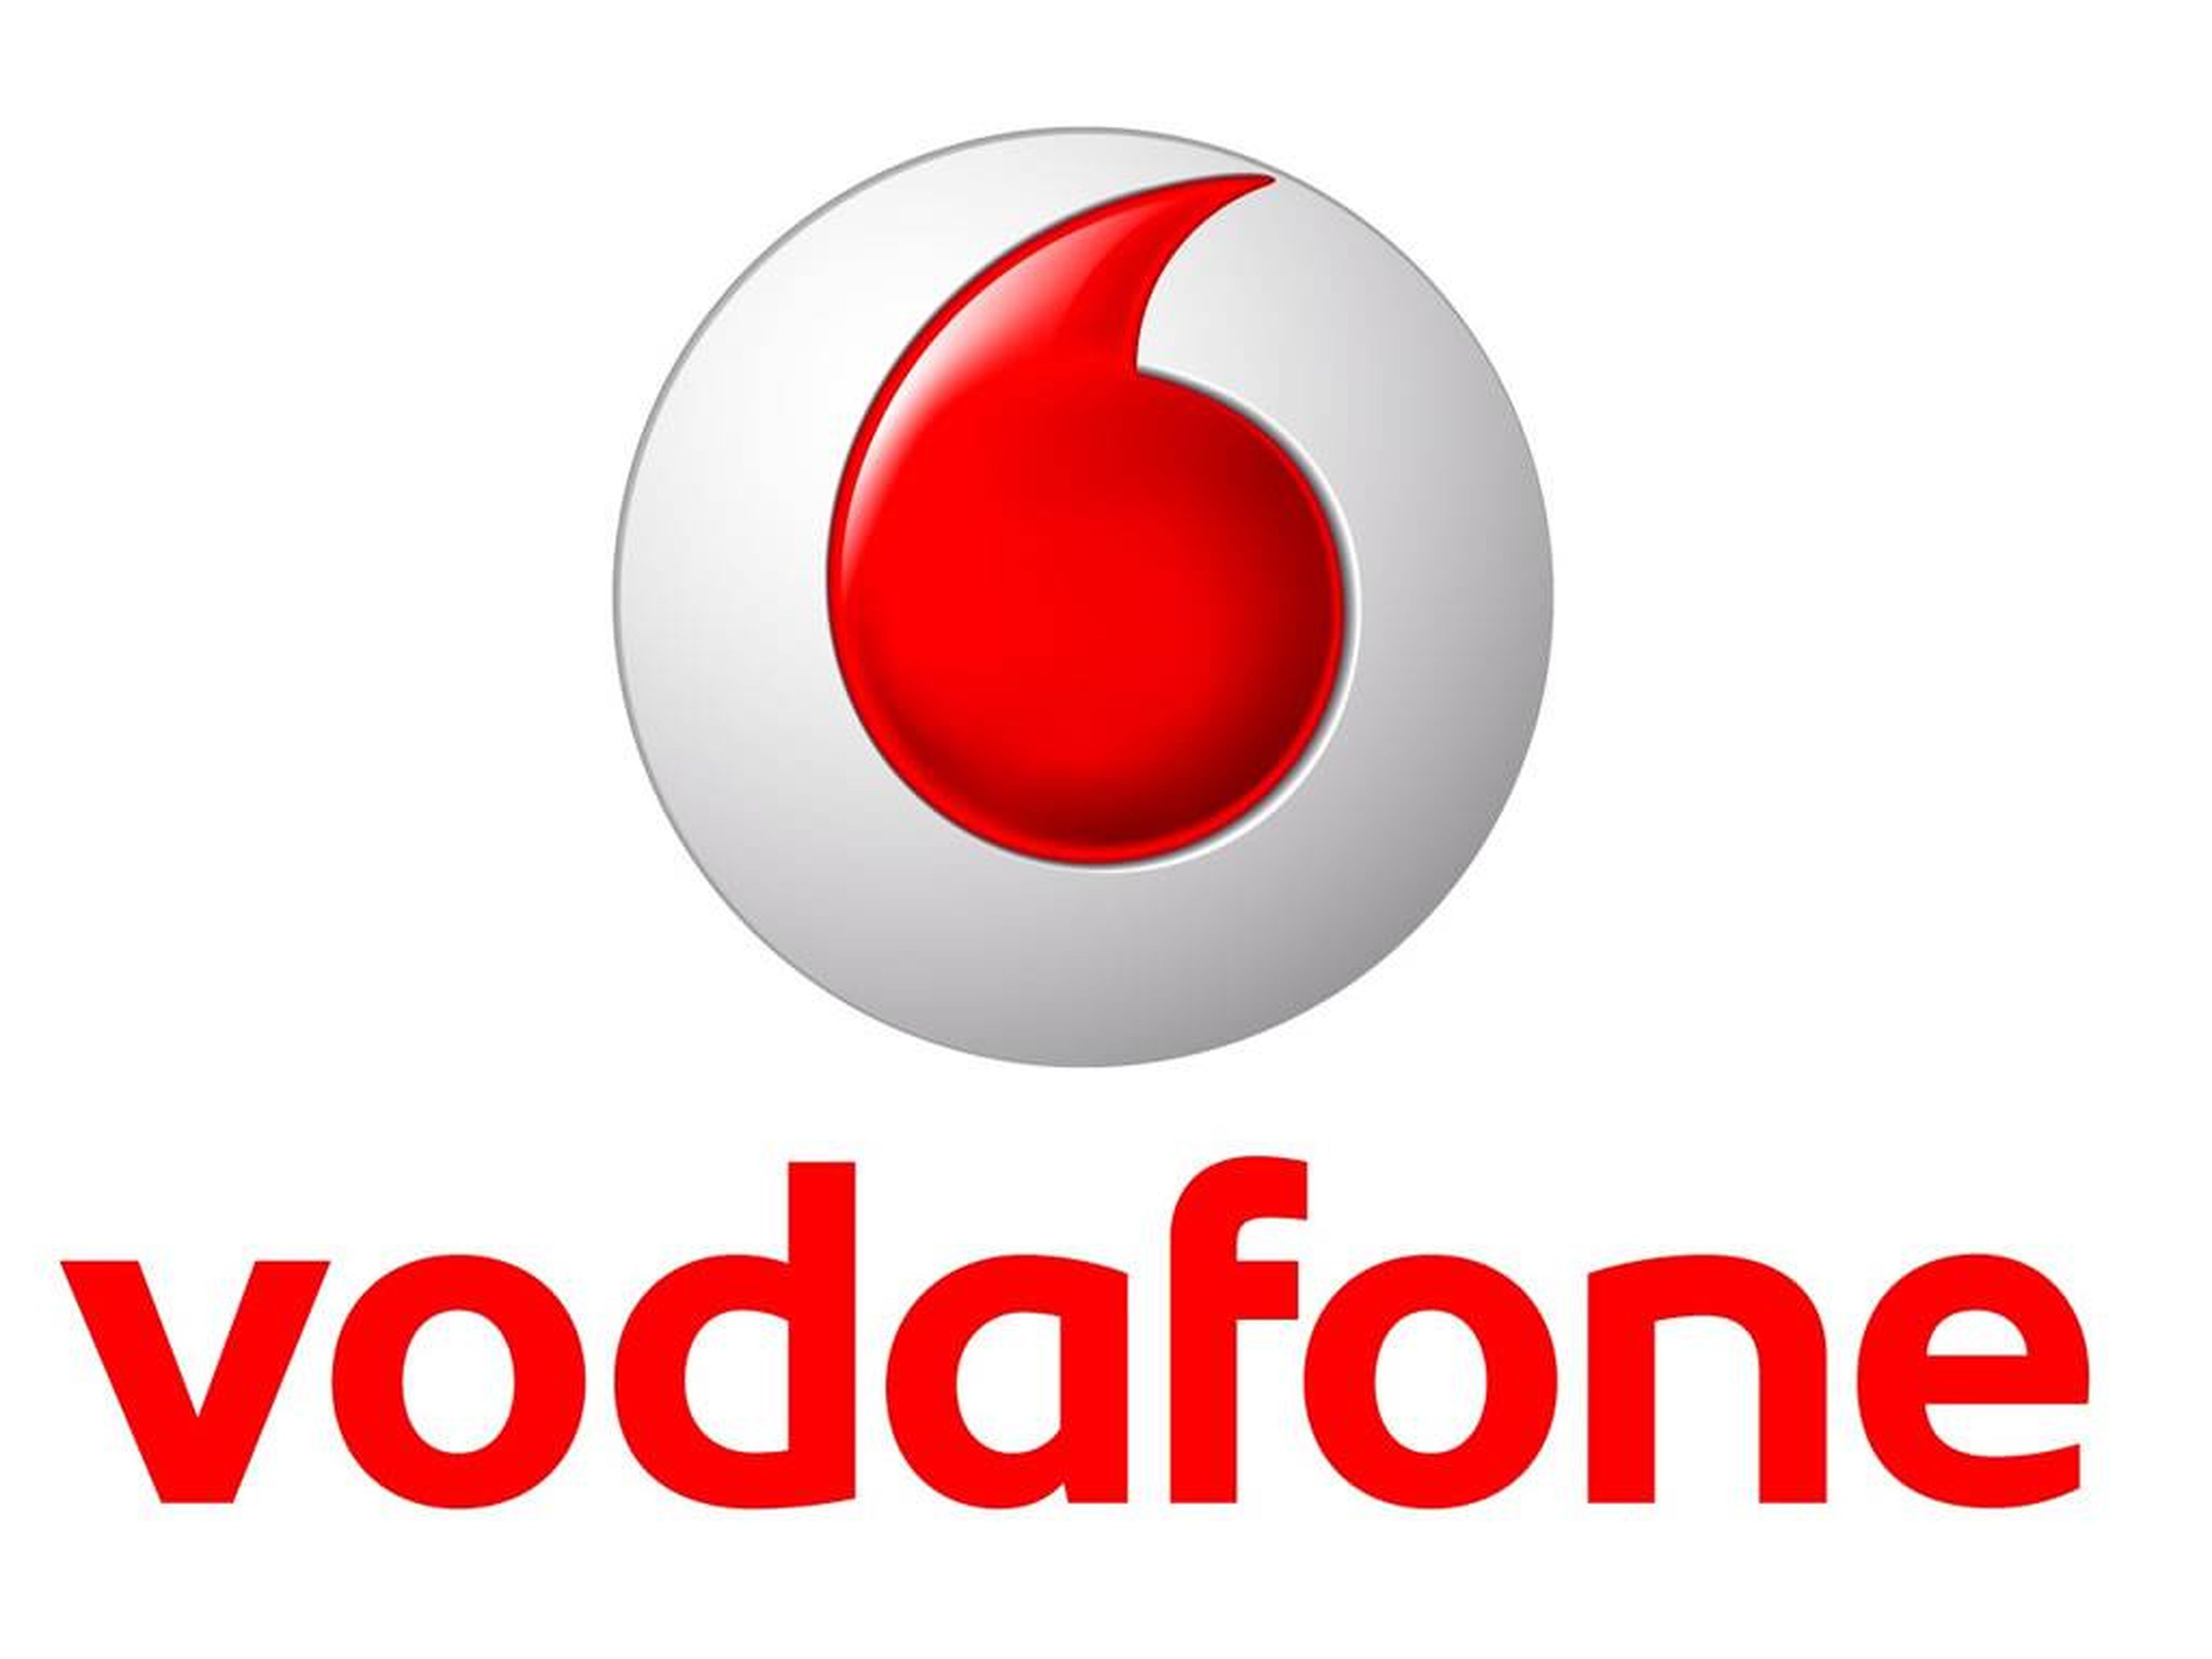 Vodafone elimina el compromiso de permanencia en sus tarifas